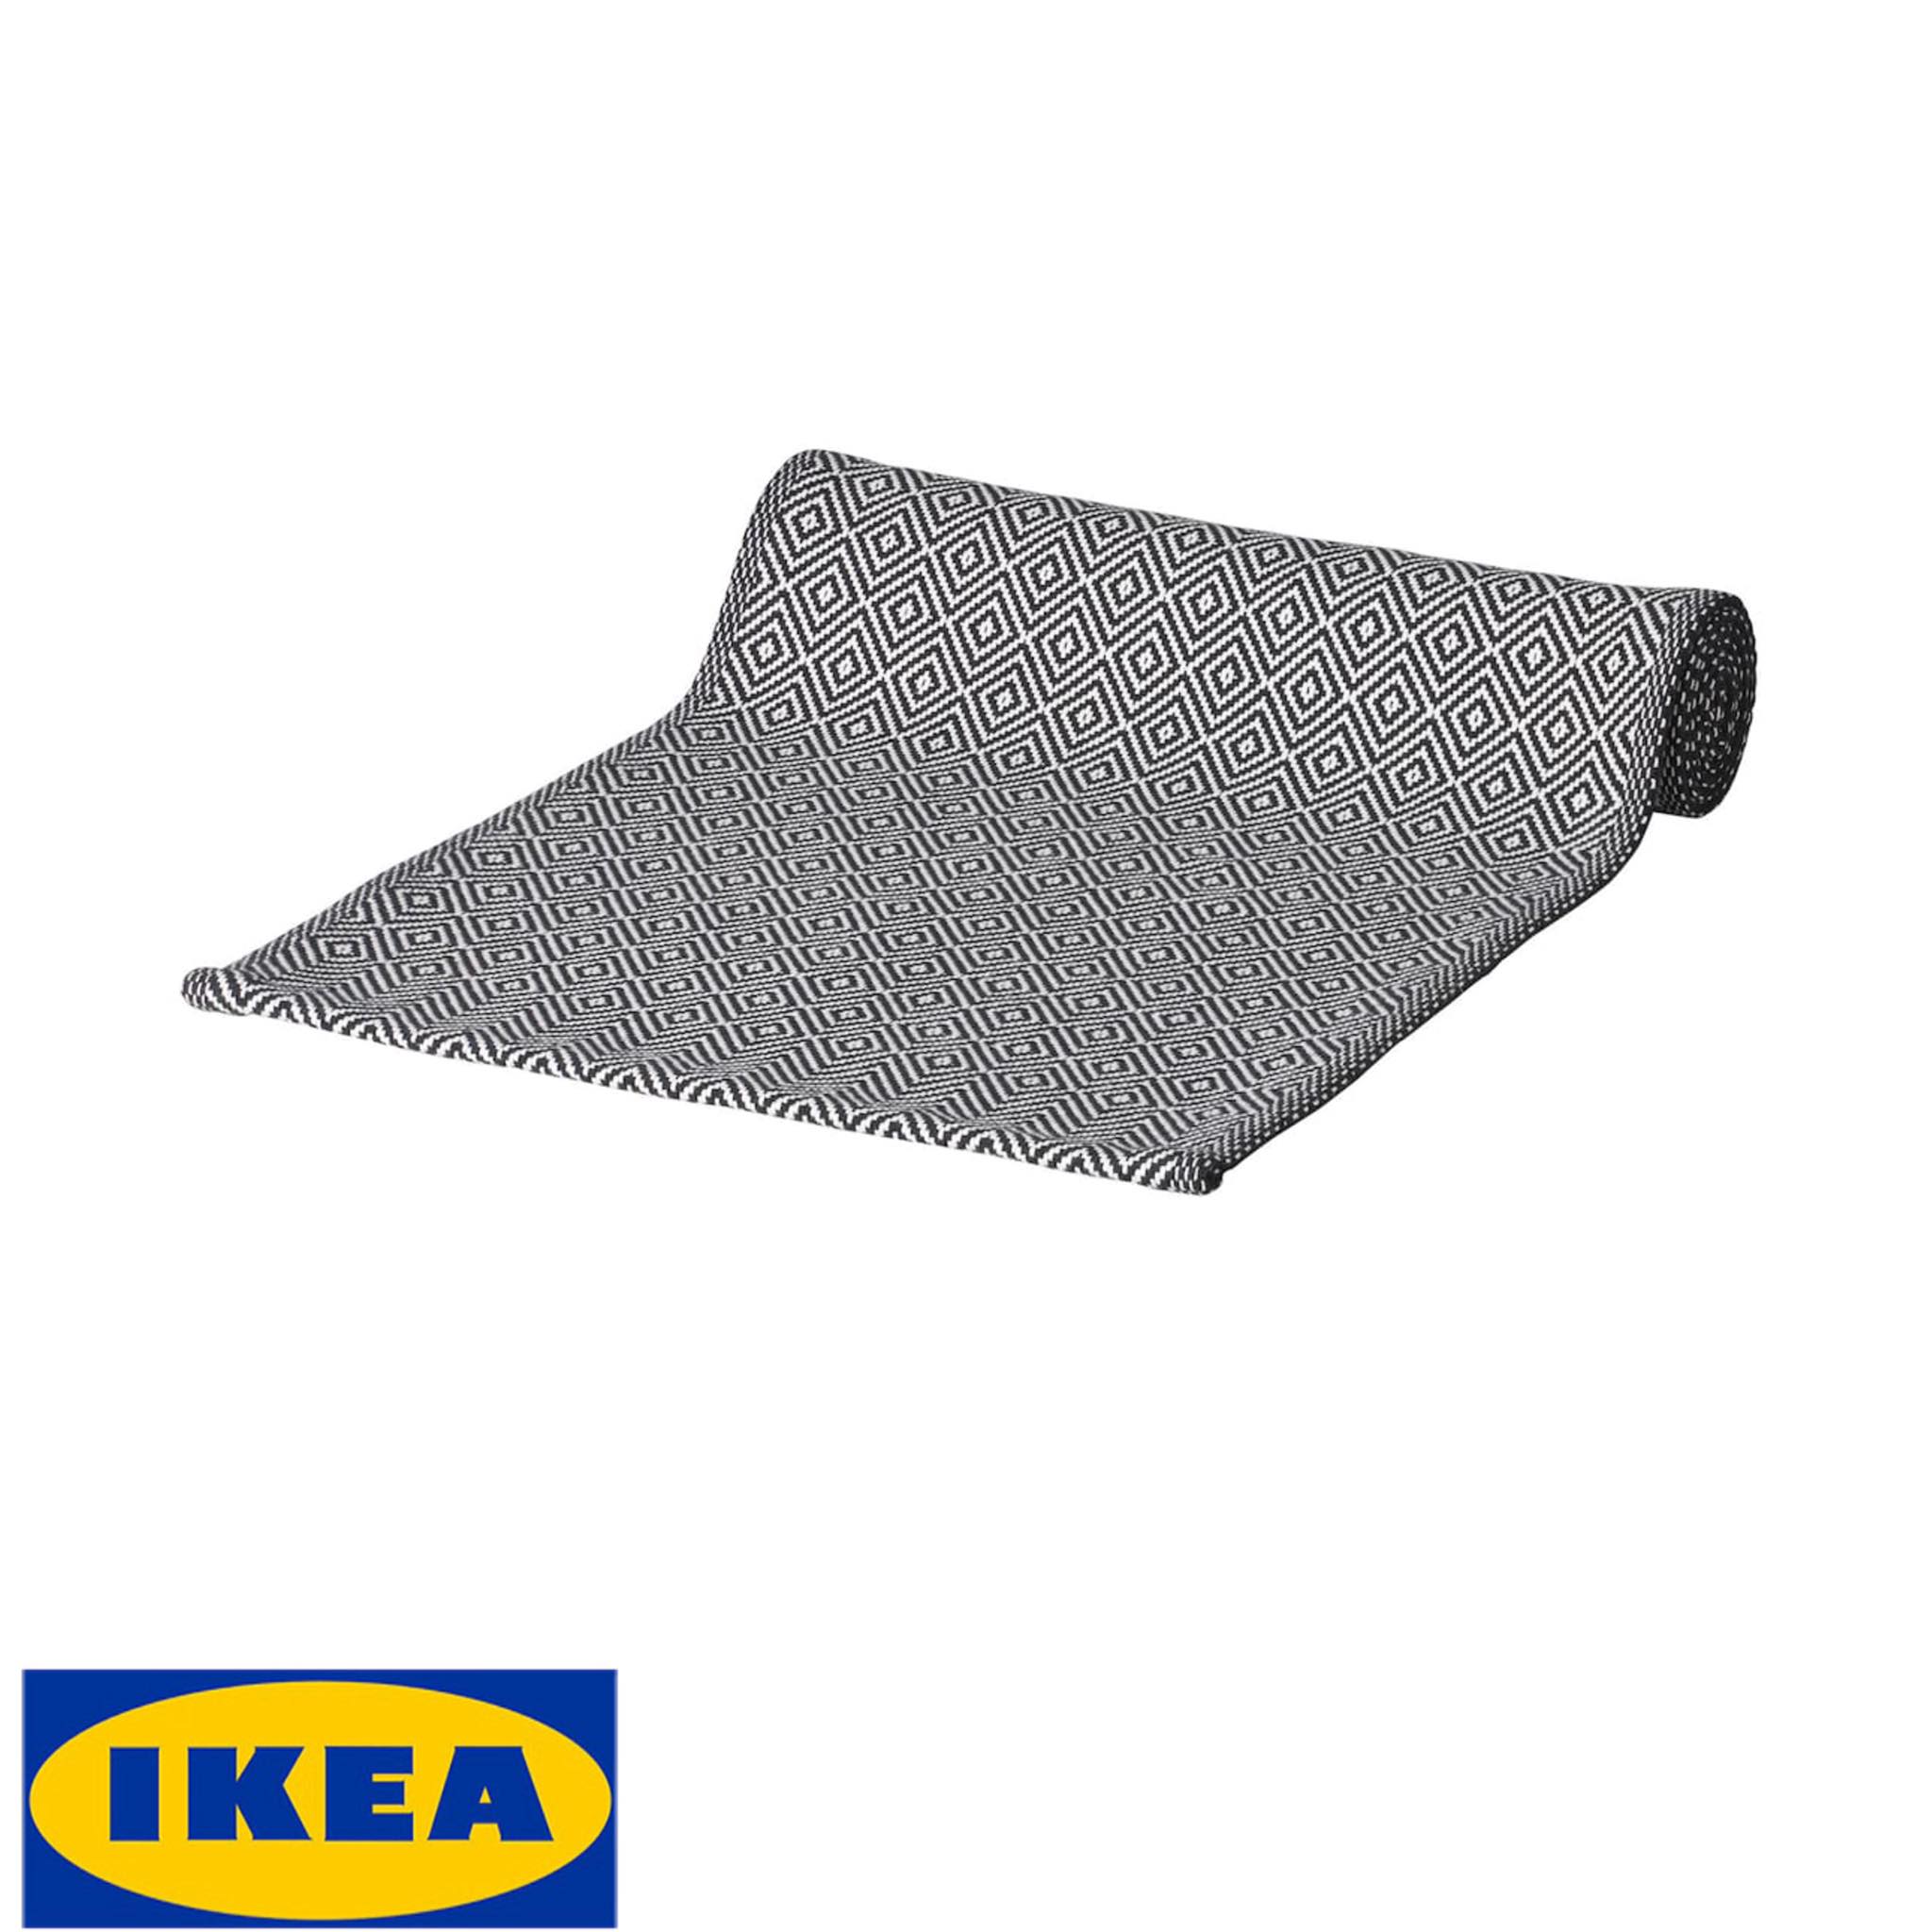 IKEA ของแท้ GODDAG กูดดัก ผ้าคาดโต๊ะ, ดำ, ขาว, 35x130 ซม.